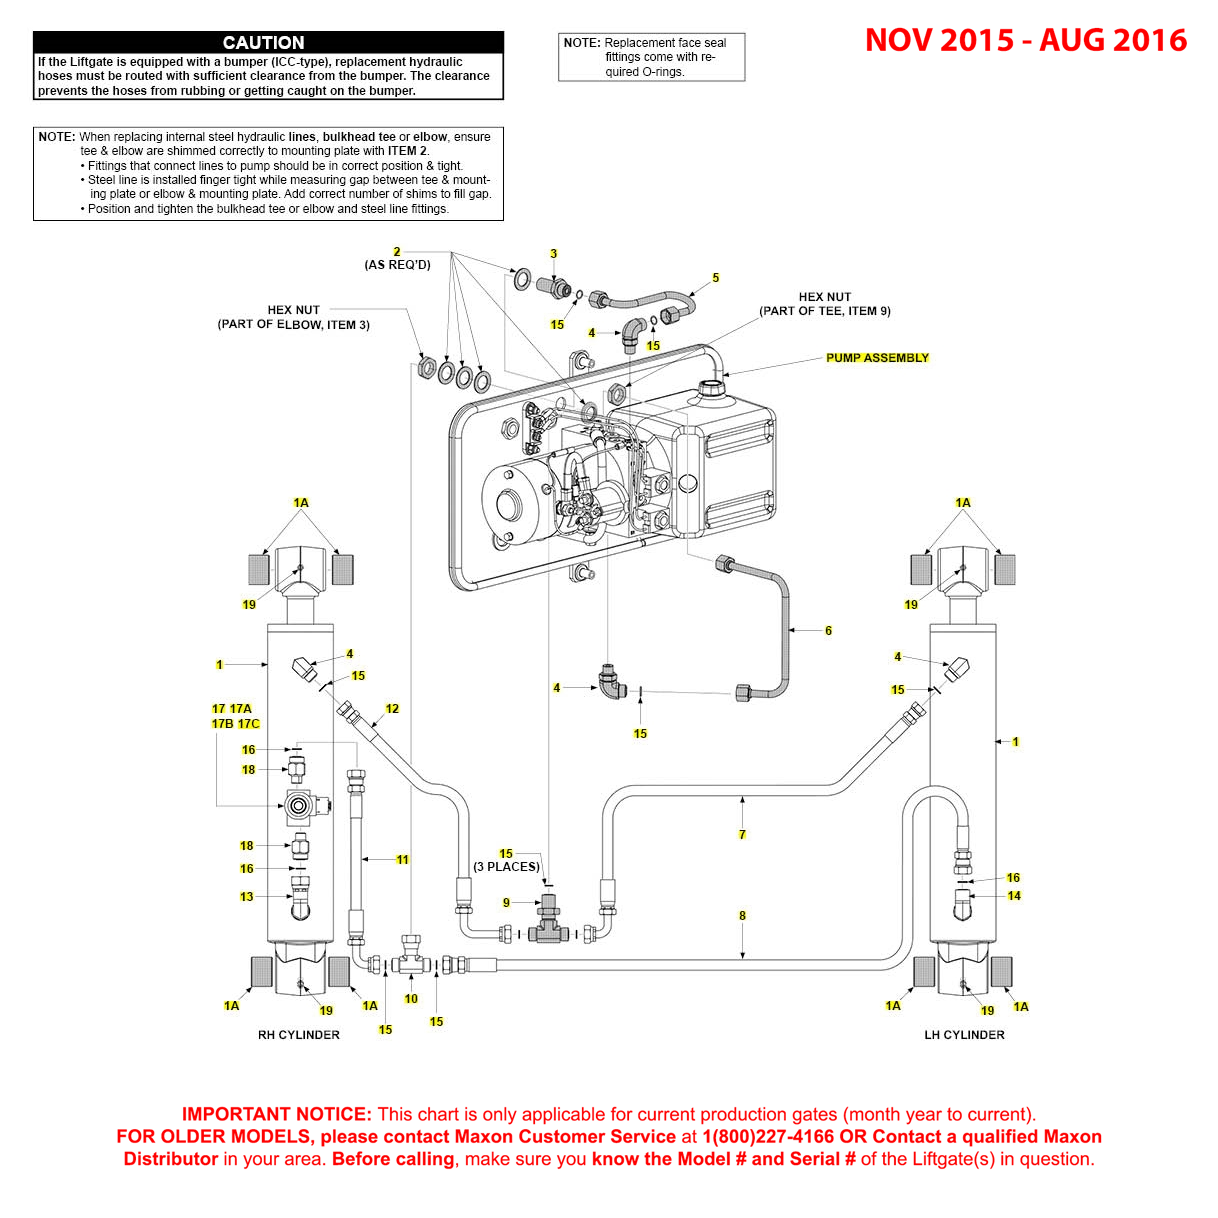 Maxon GPTWR (Nov 2015 - Aug 2016) Power Down Hydraulic Systems Diagram